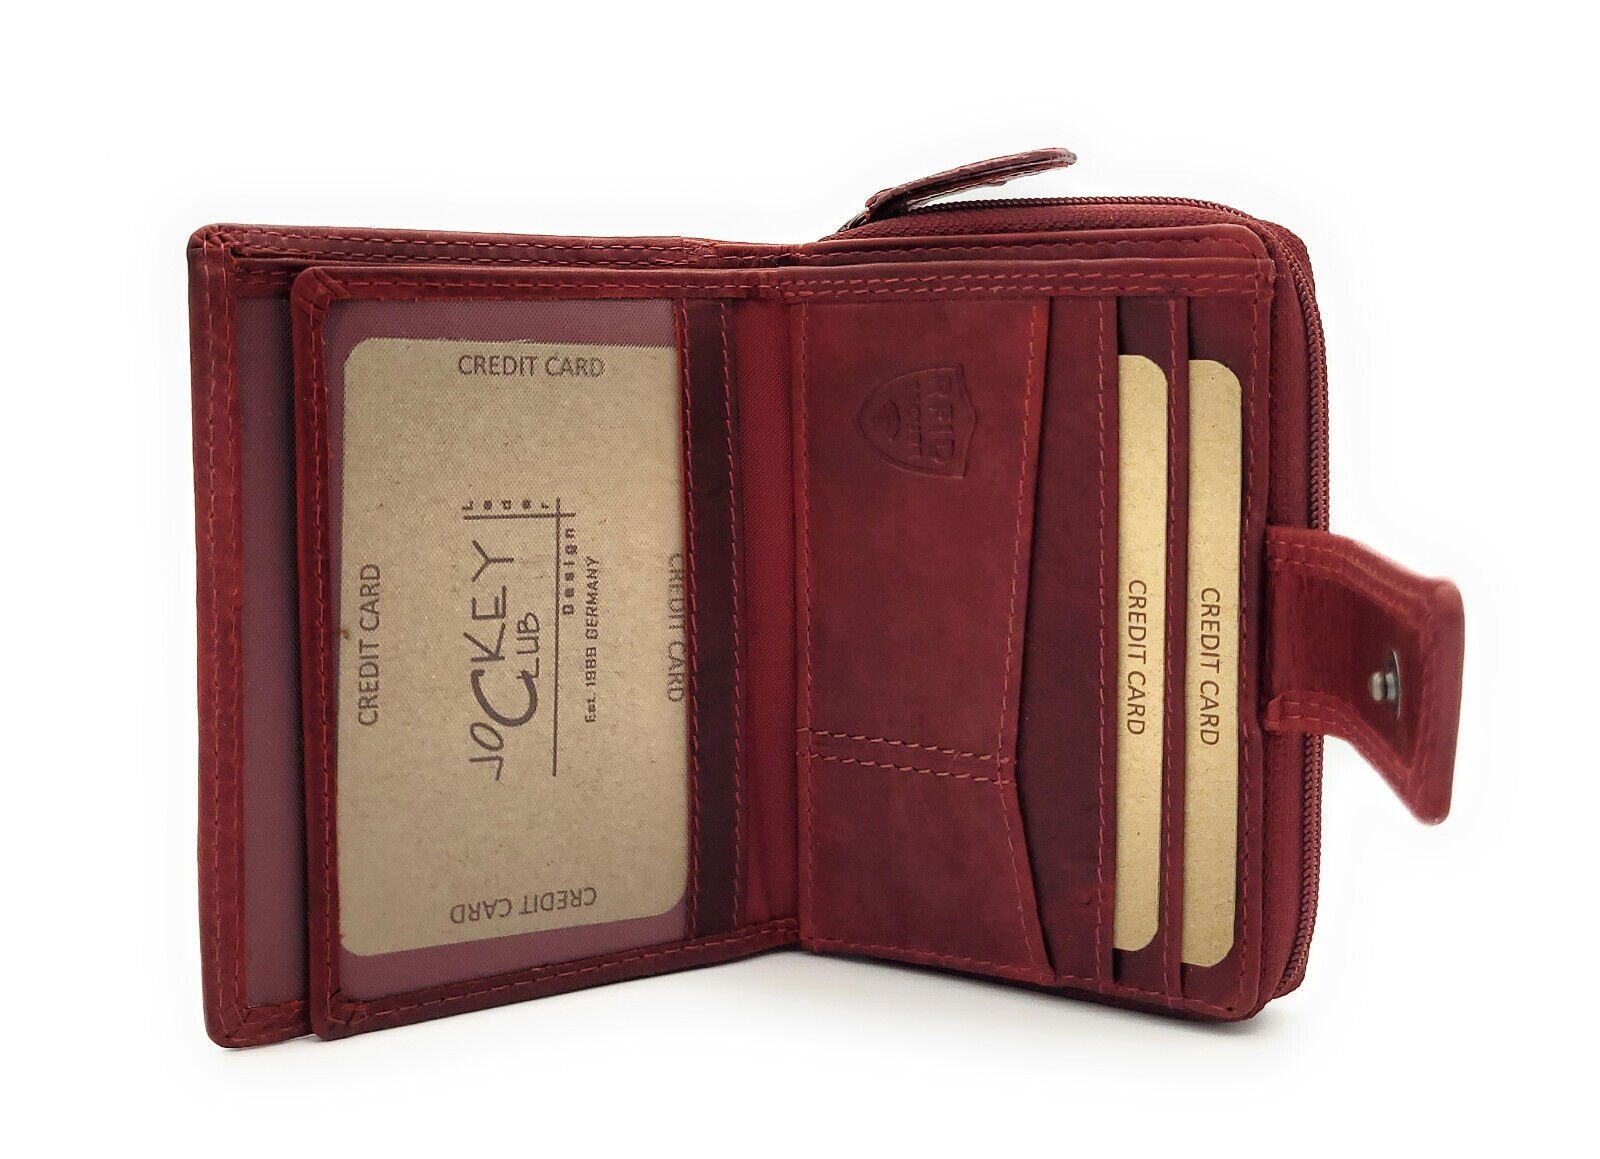 JOCKEY CLUB Schutz, Geldbörse Portemonnaie mit RFID Damen handlich, rot Leder & kompakt echt Mini Sauvage cherry Rindleder